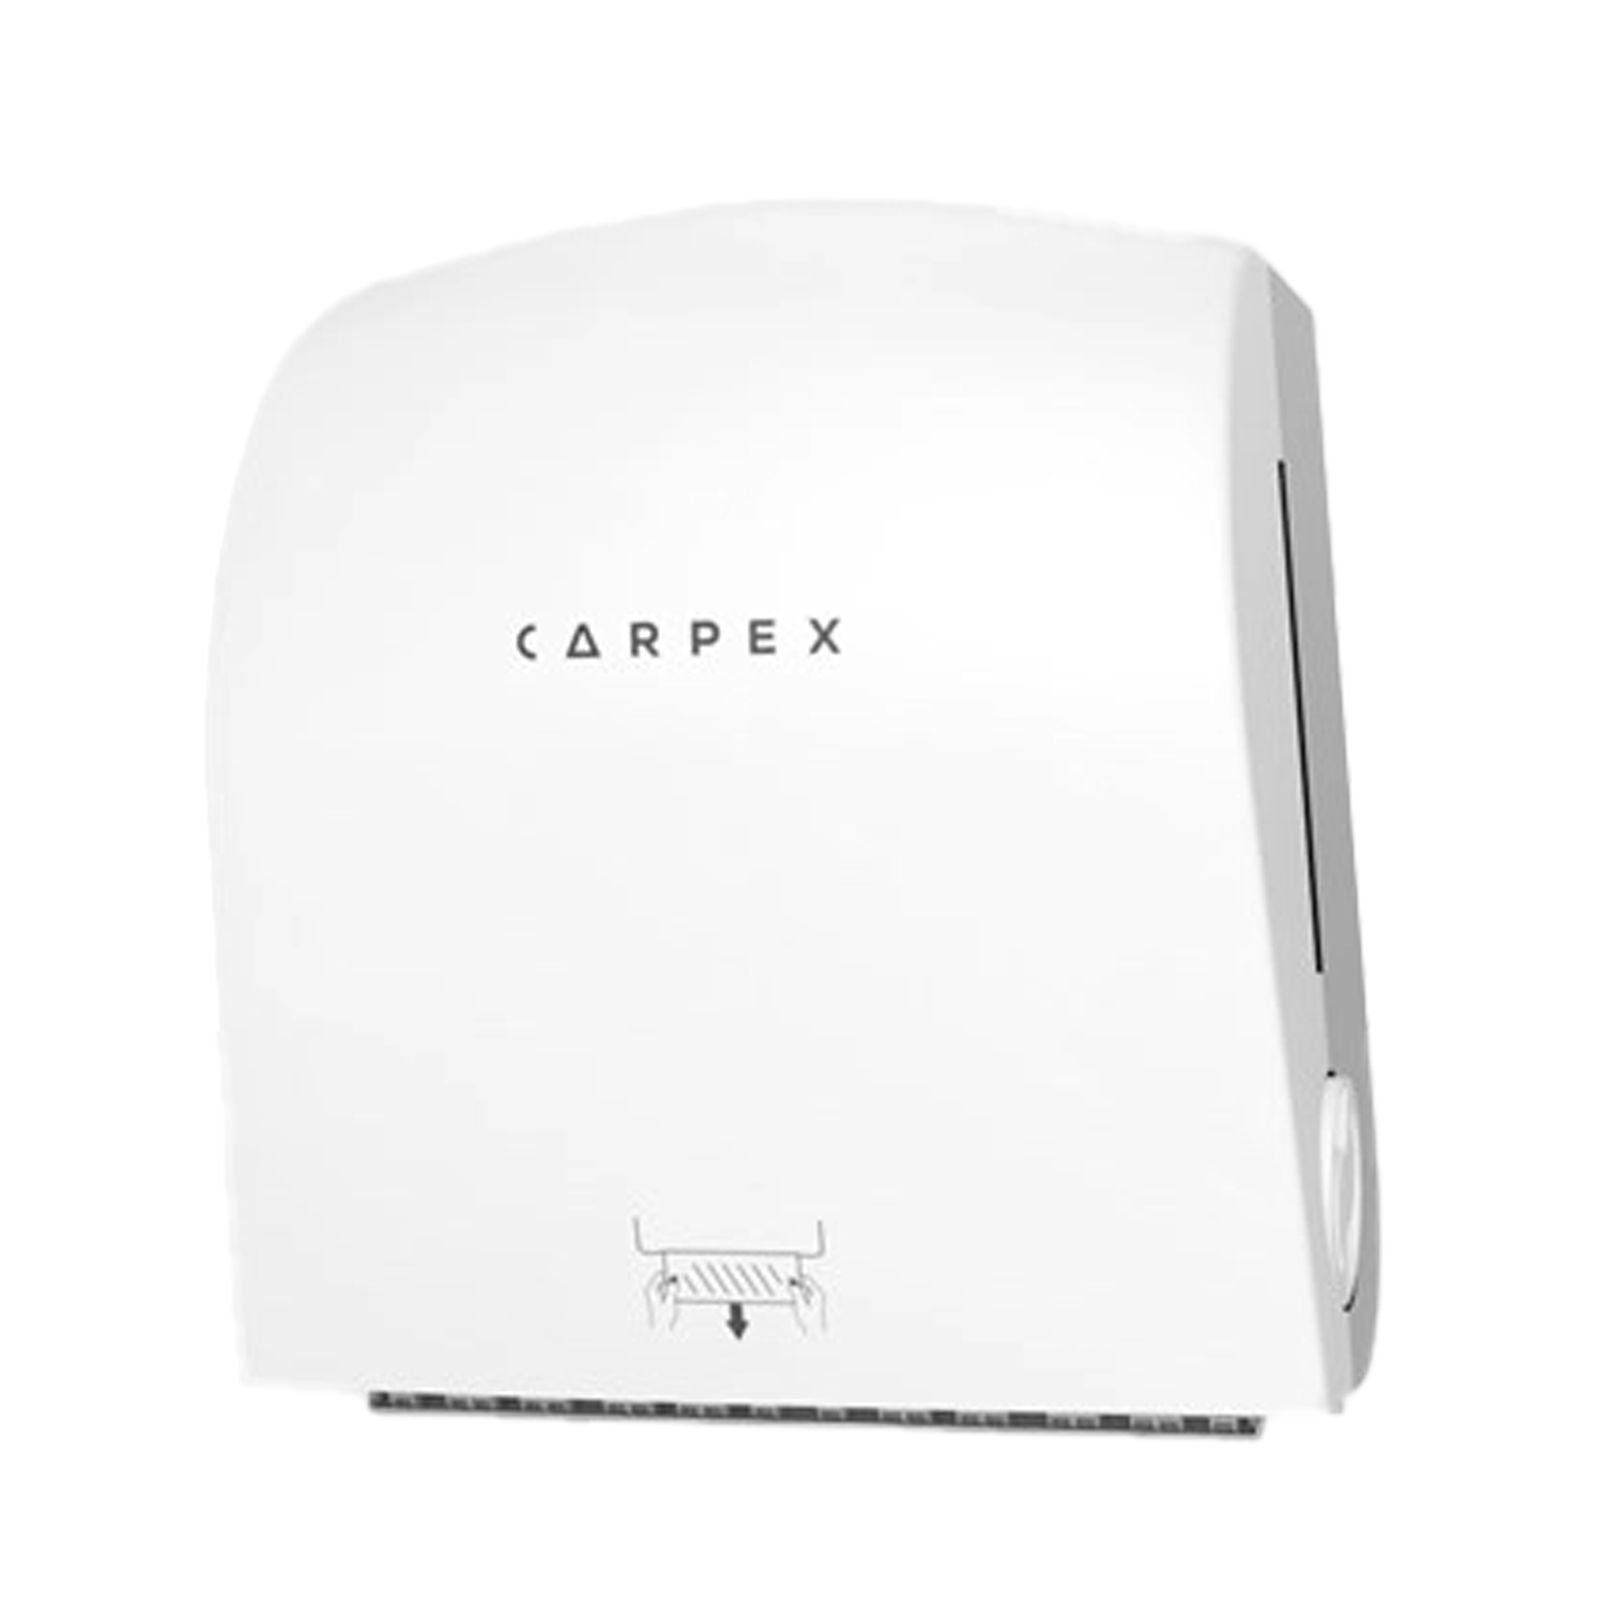 Carpex Autocut Manuel Kağıt Havlu Makinesi - Havlu Dispenseri